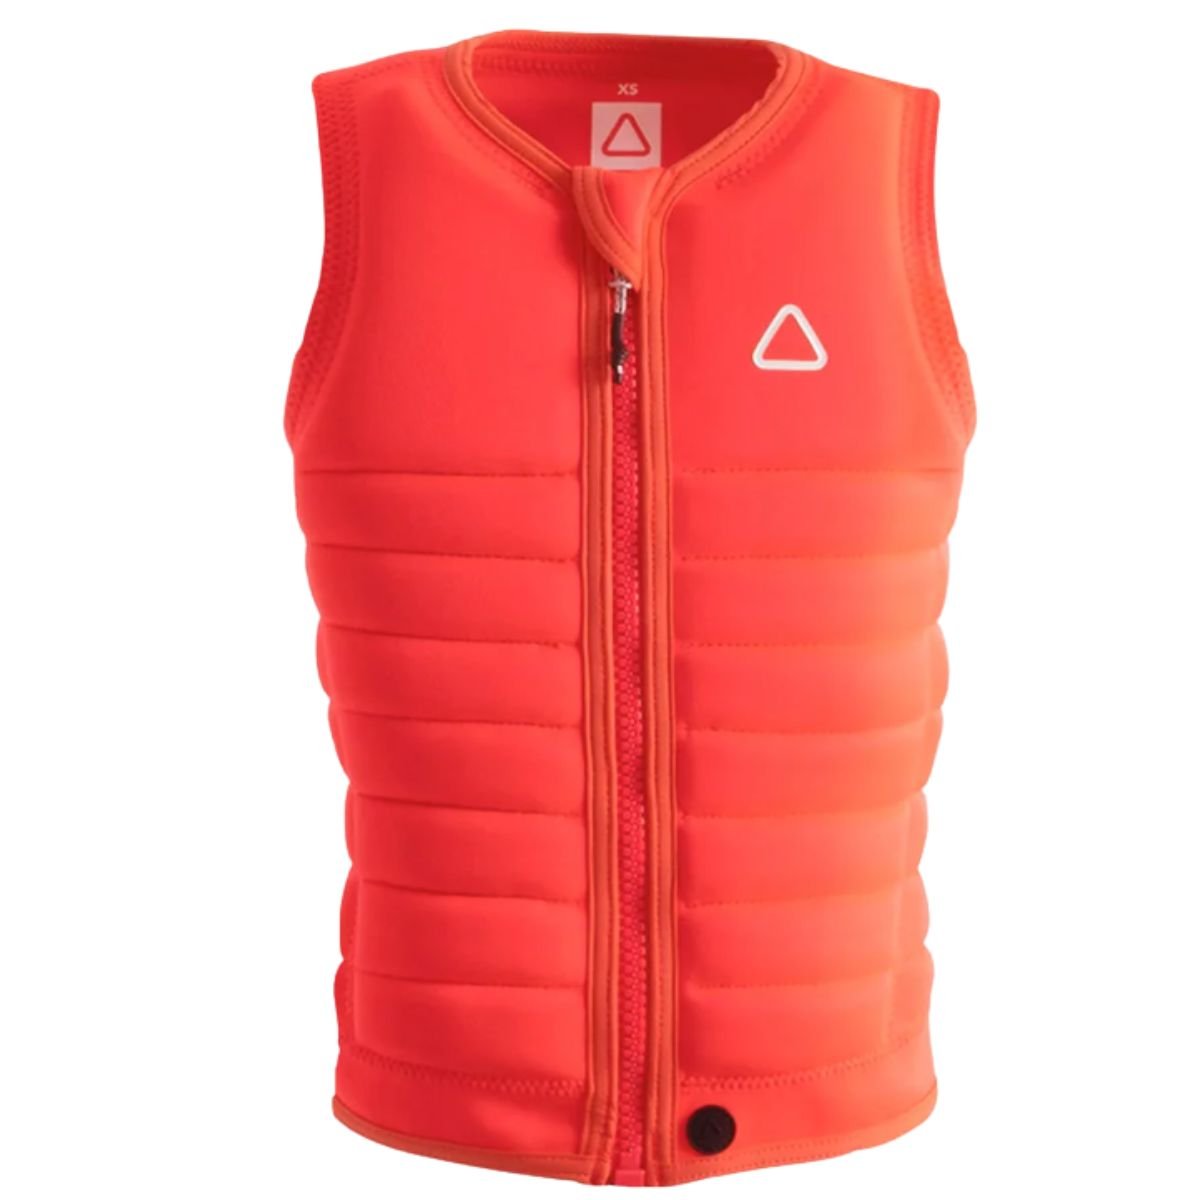 Follow Primary Ladies Comp Wake Vest in Fluro Red - BoardCo